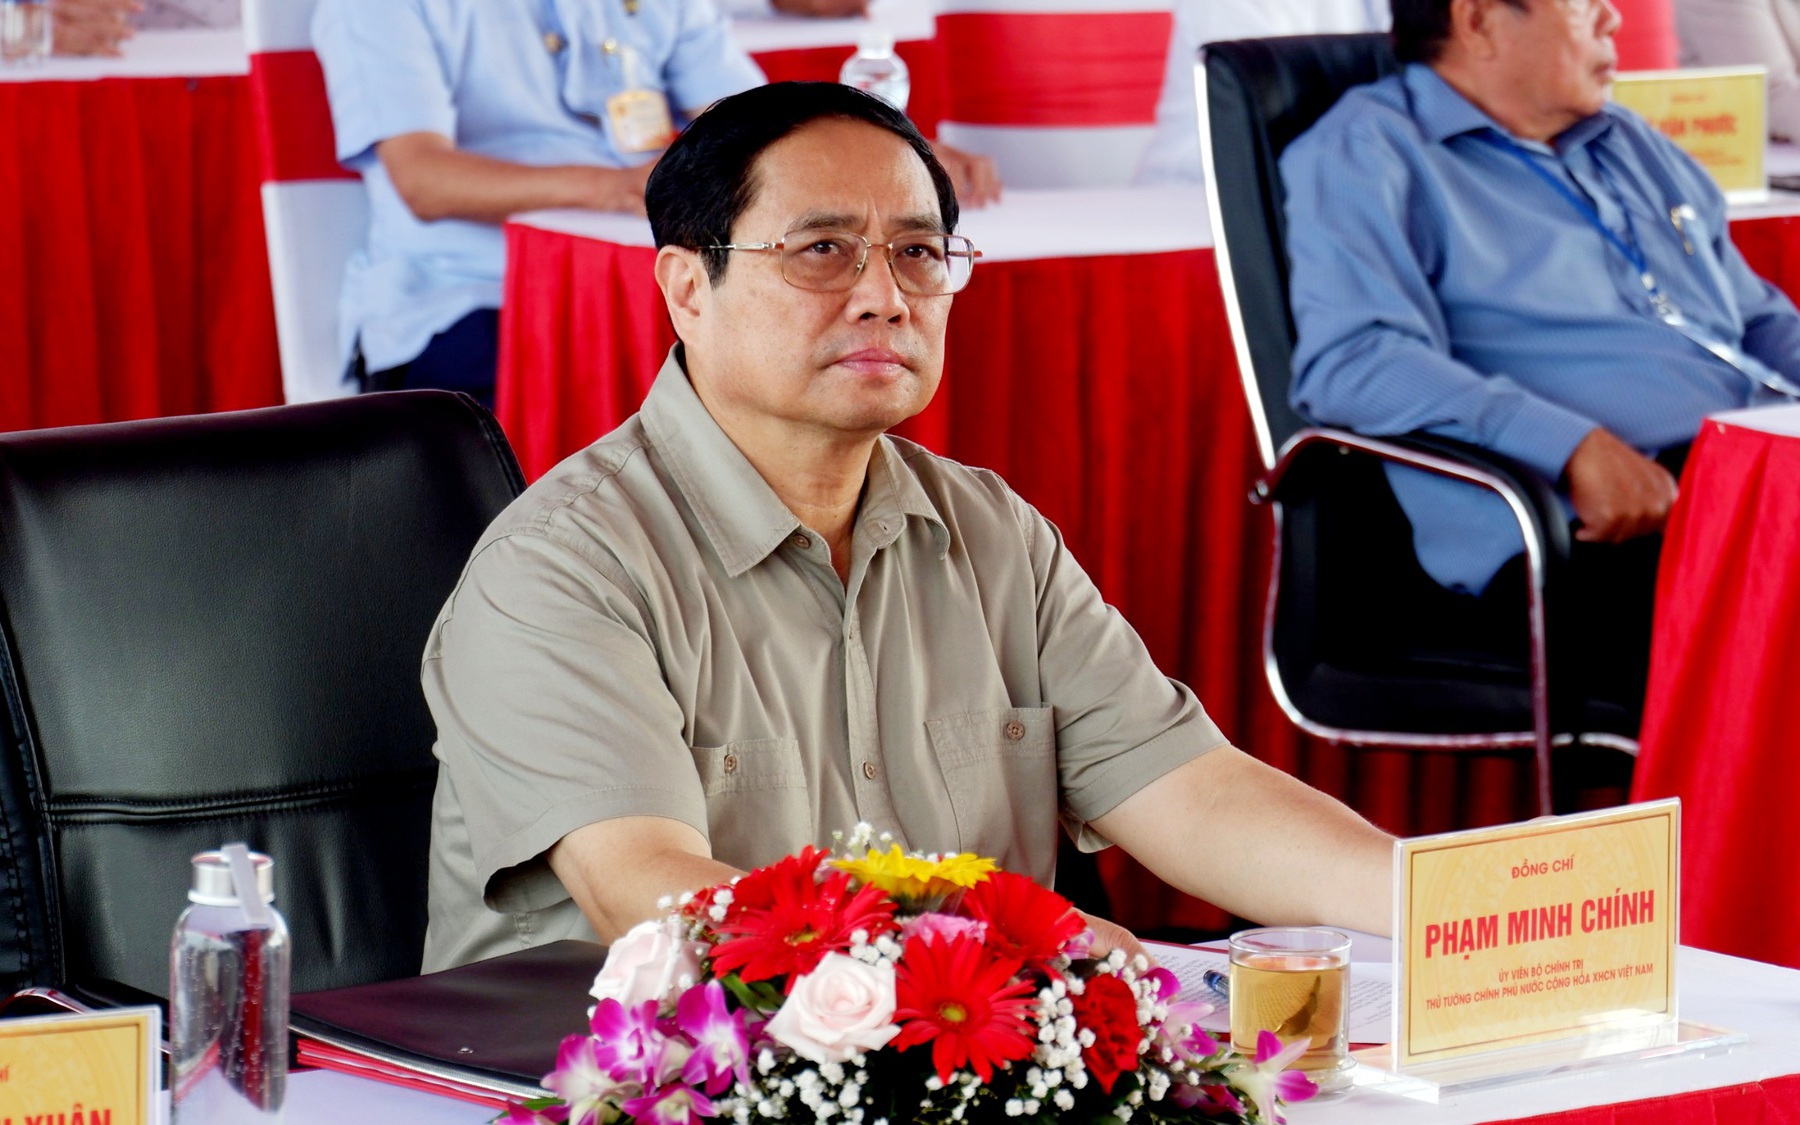 Thủ tướng Chính phủ dự lễ khởi công cao tốc Châu Đốc - Sóc Trăng - Cần Thơ